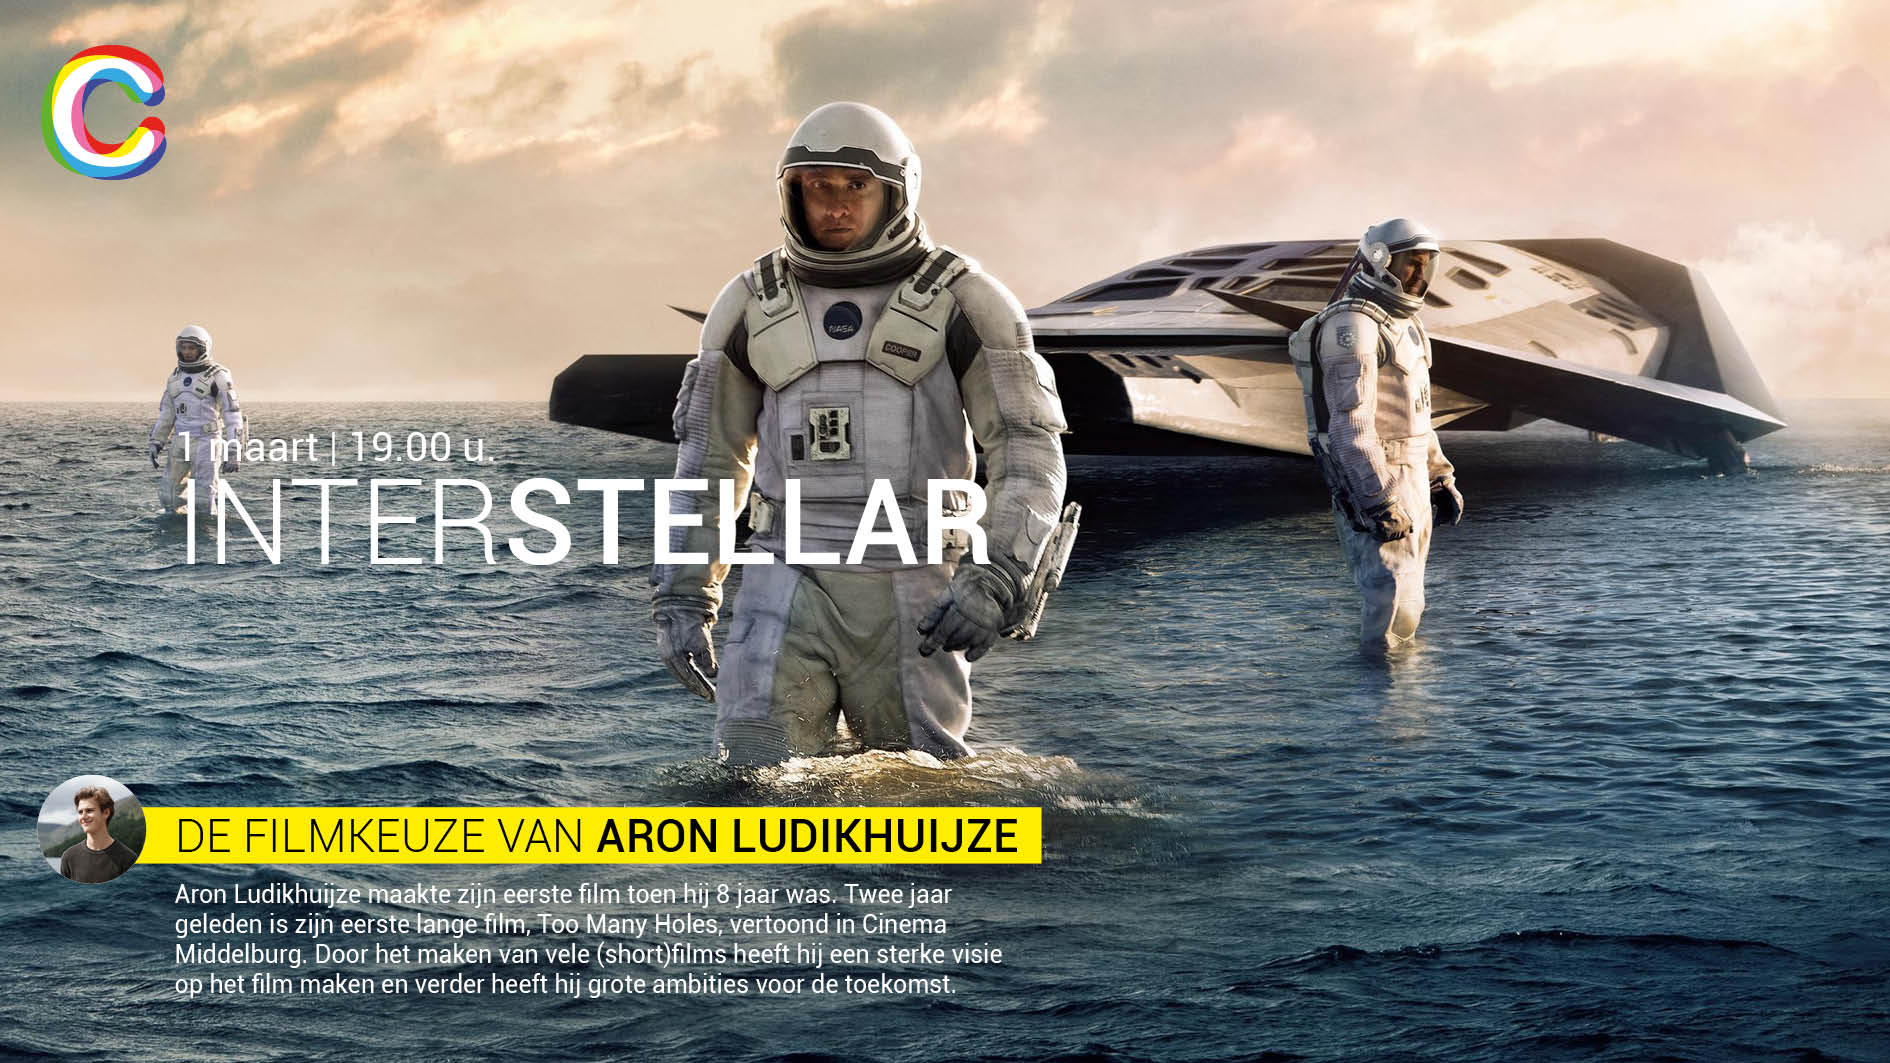 De filmkeuze van Aron Ludikhuijze Interstellar Cinema Middelburg 